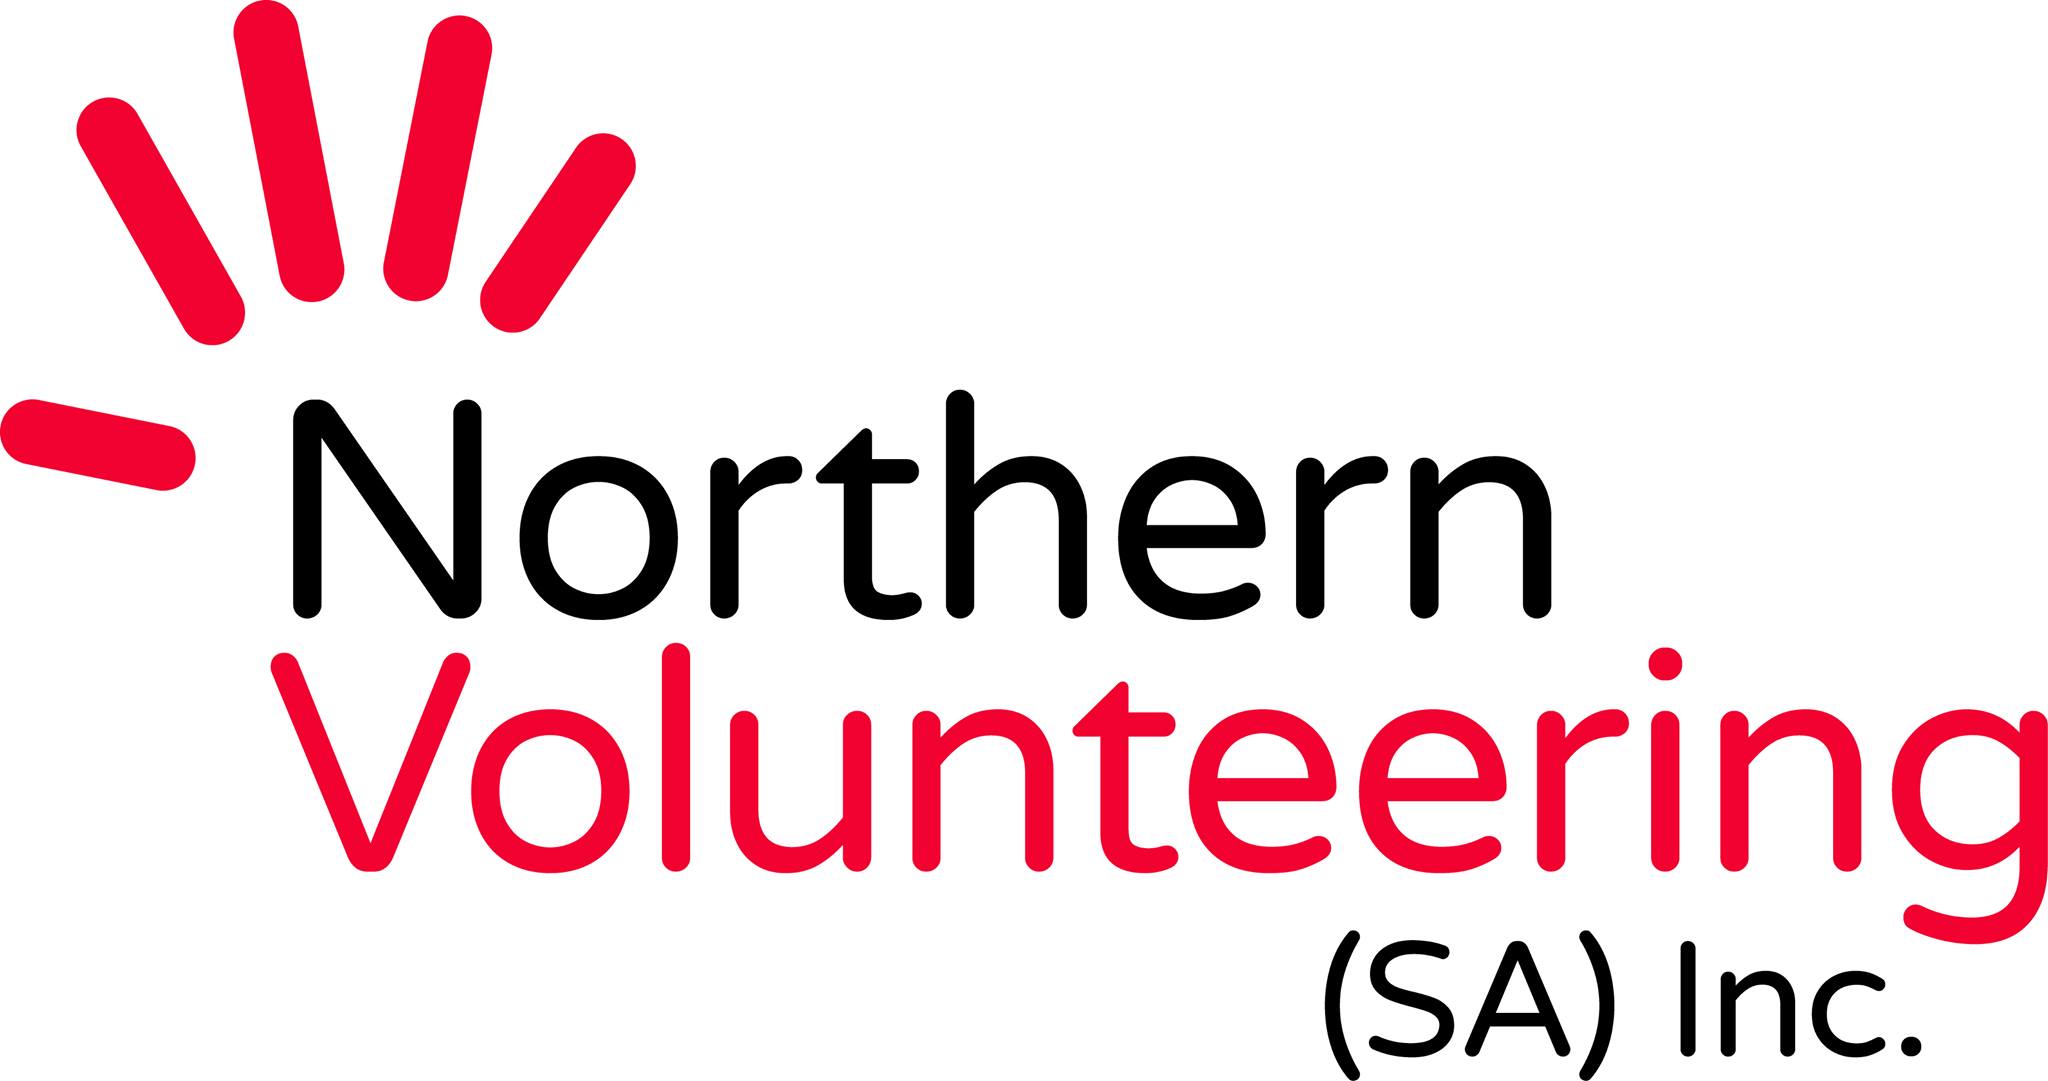 Tình nguyện viên miền Bắc SA Inc